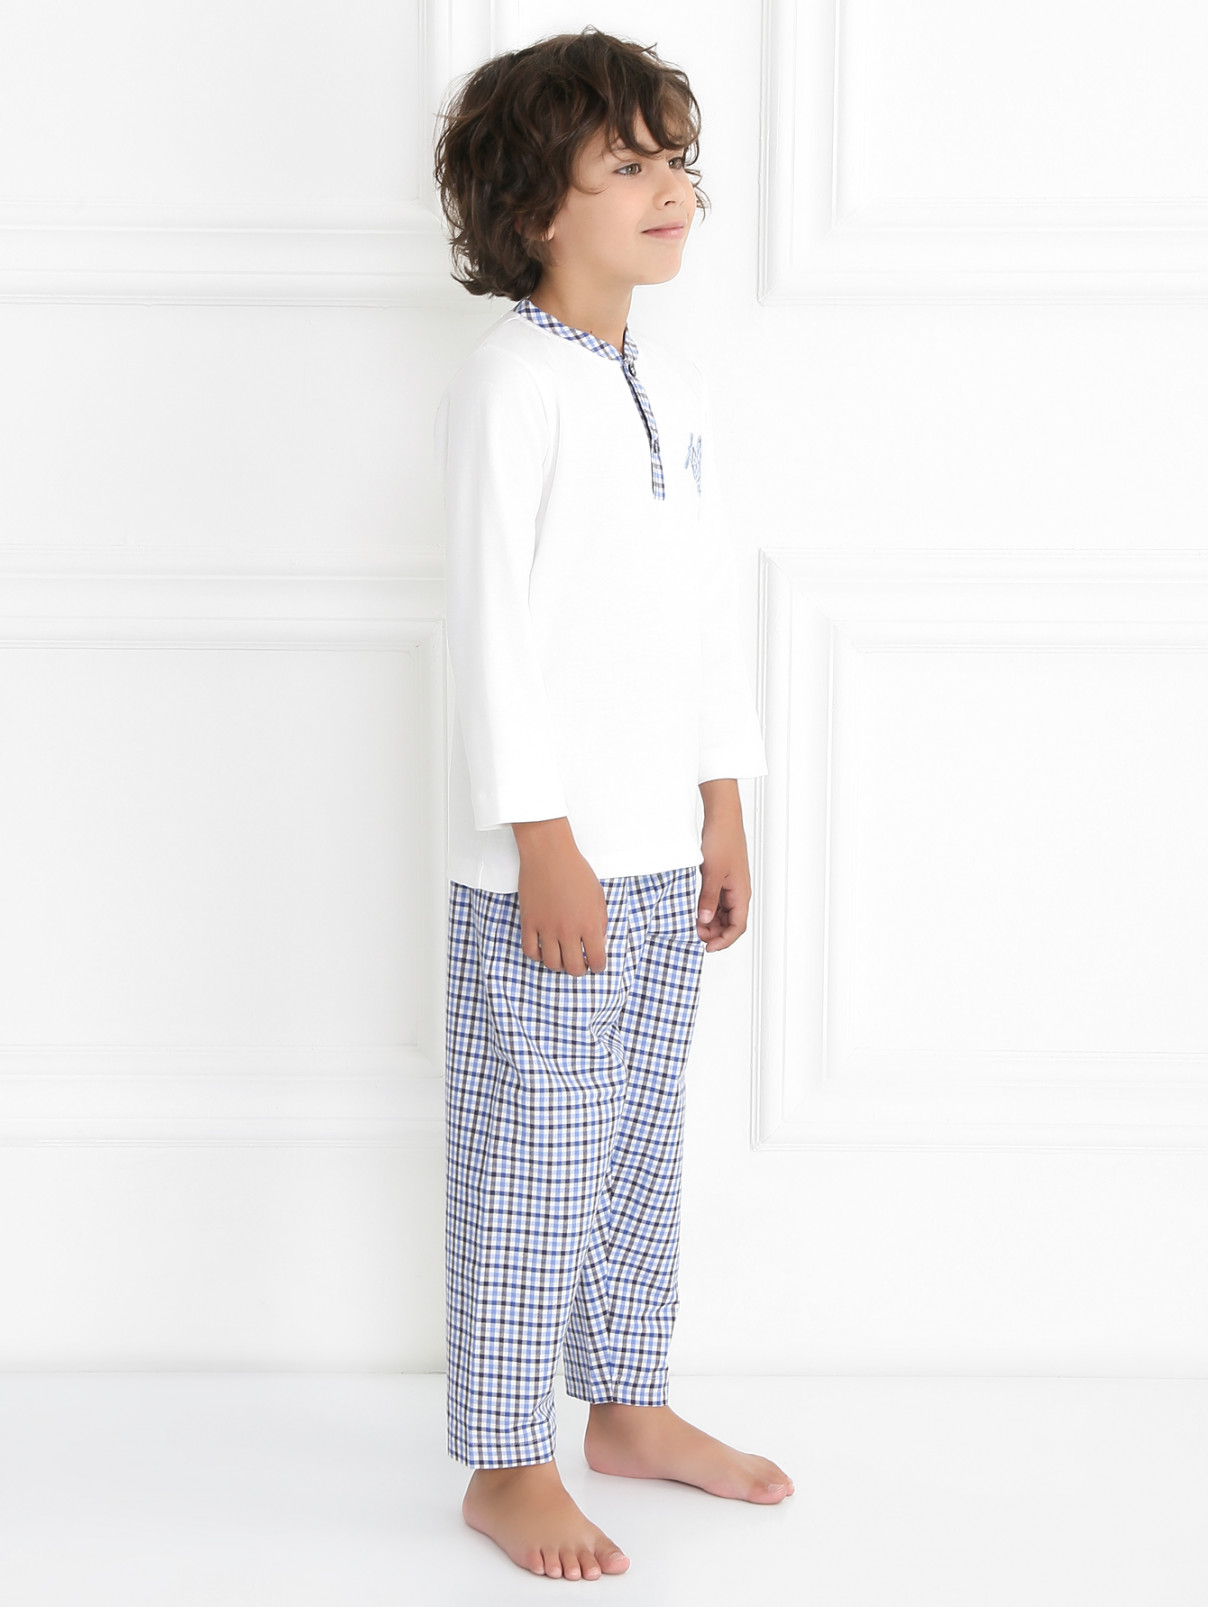 Пижама из хлопка с узором "клетка" Giottino  –  Модель Общий вид  – Цвет:  Белый